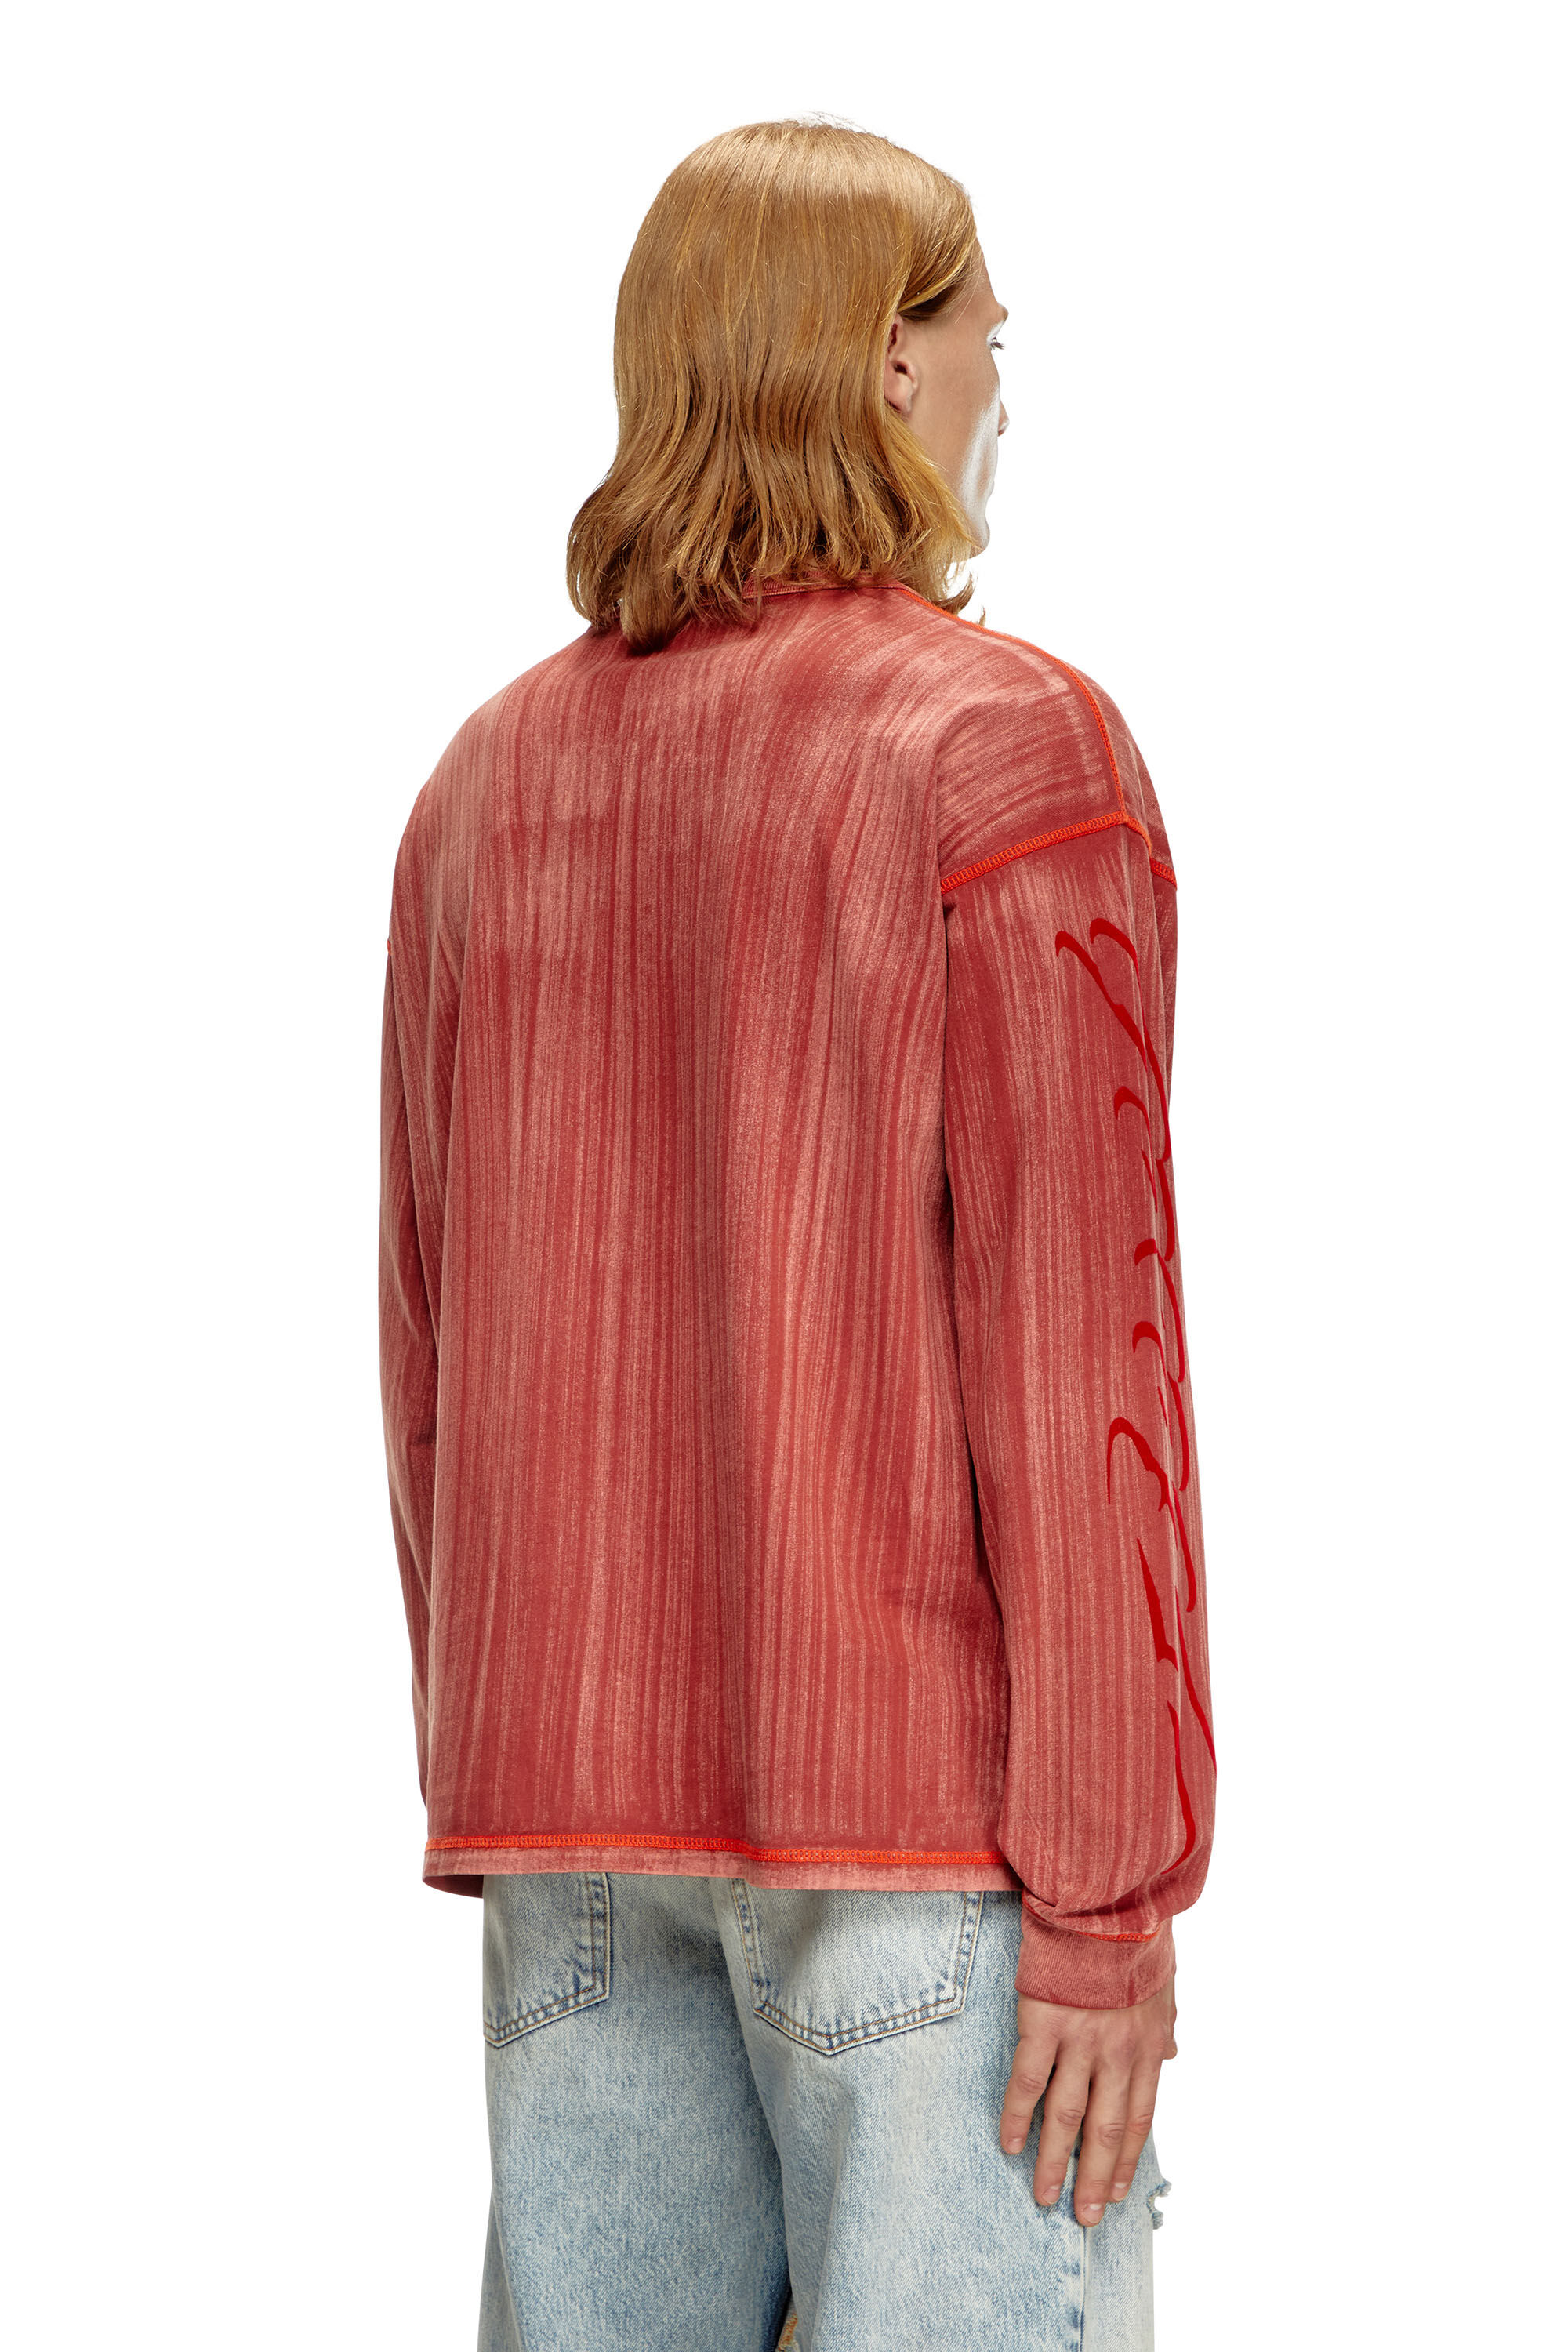 Diesel - T-BOXT-LS-Q2, Homme T-shirt à manches longues avec effet délavé au coups de pinceau in Rouge - Image 4